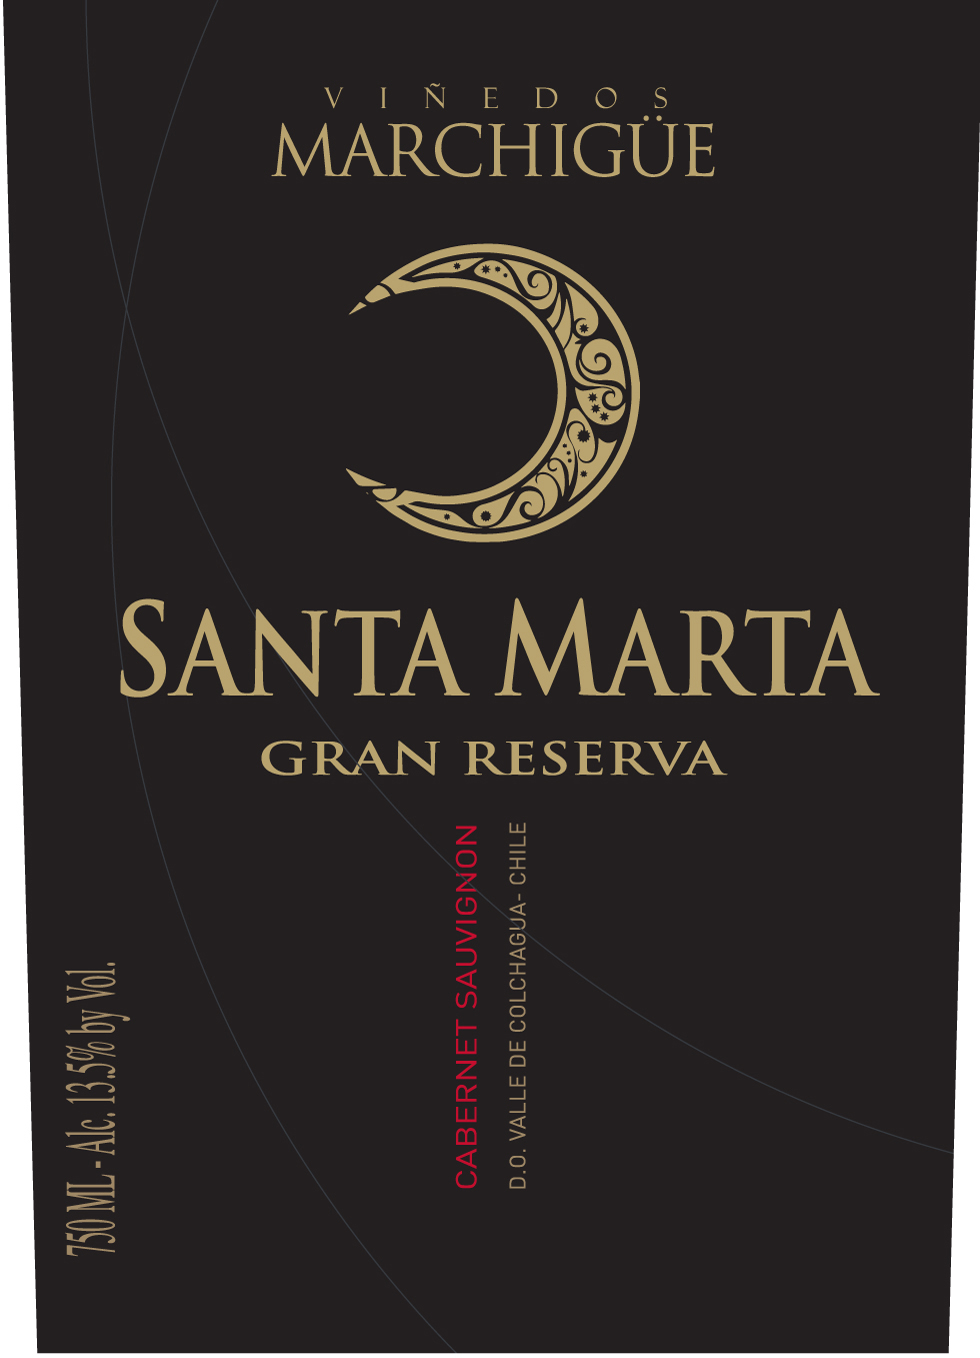 Santa Marta - Cabernet Sauvignon - Gran Reserva label